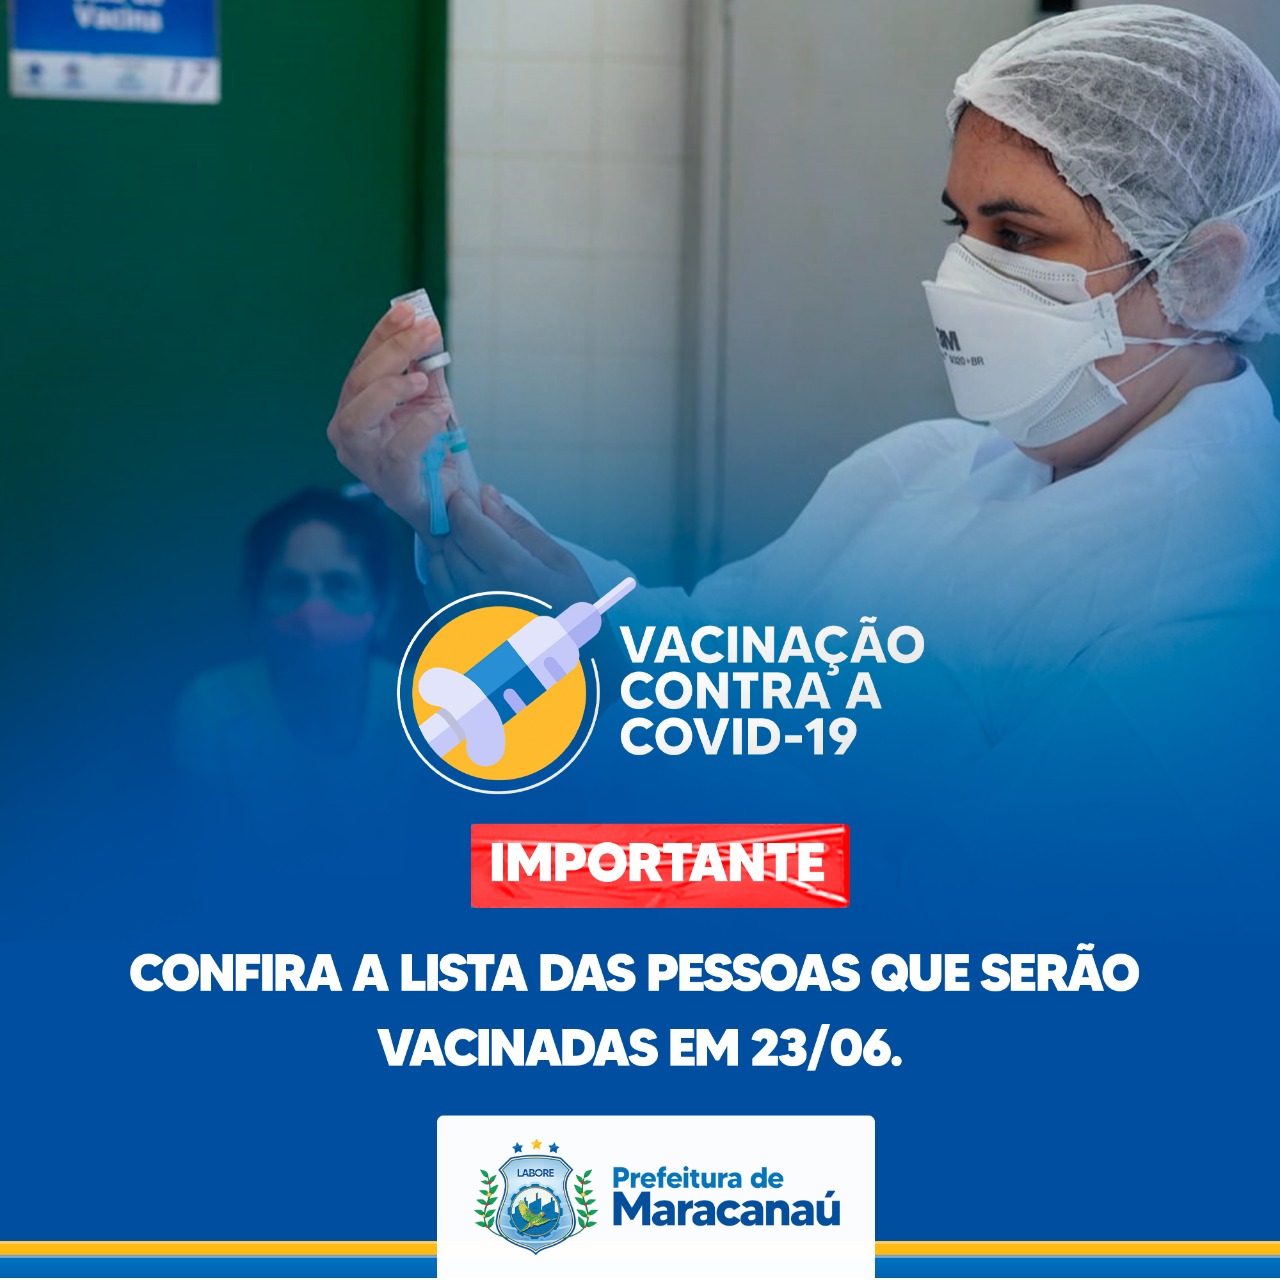 Read more about the article Confira a lista das pessoas que serão vacinadas em 23/06